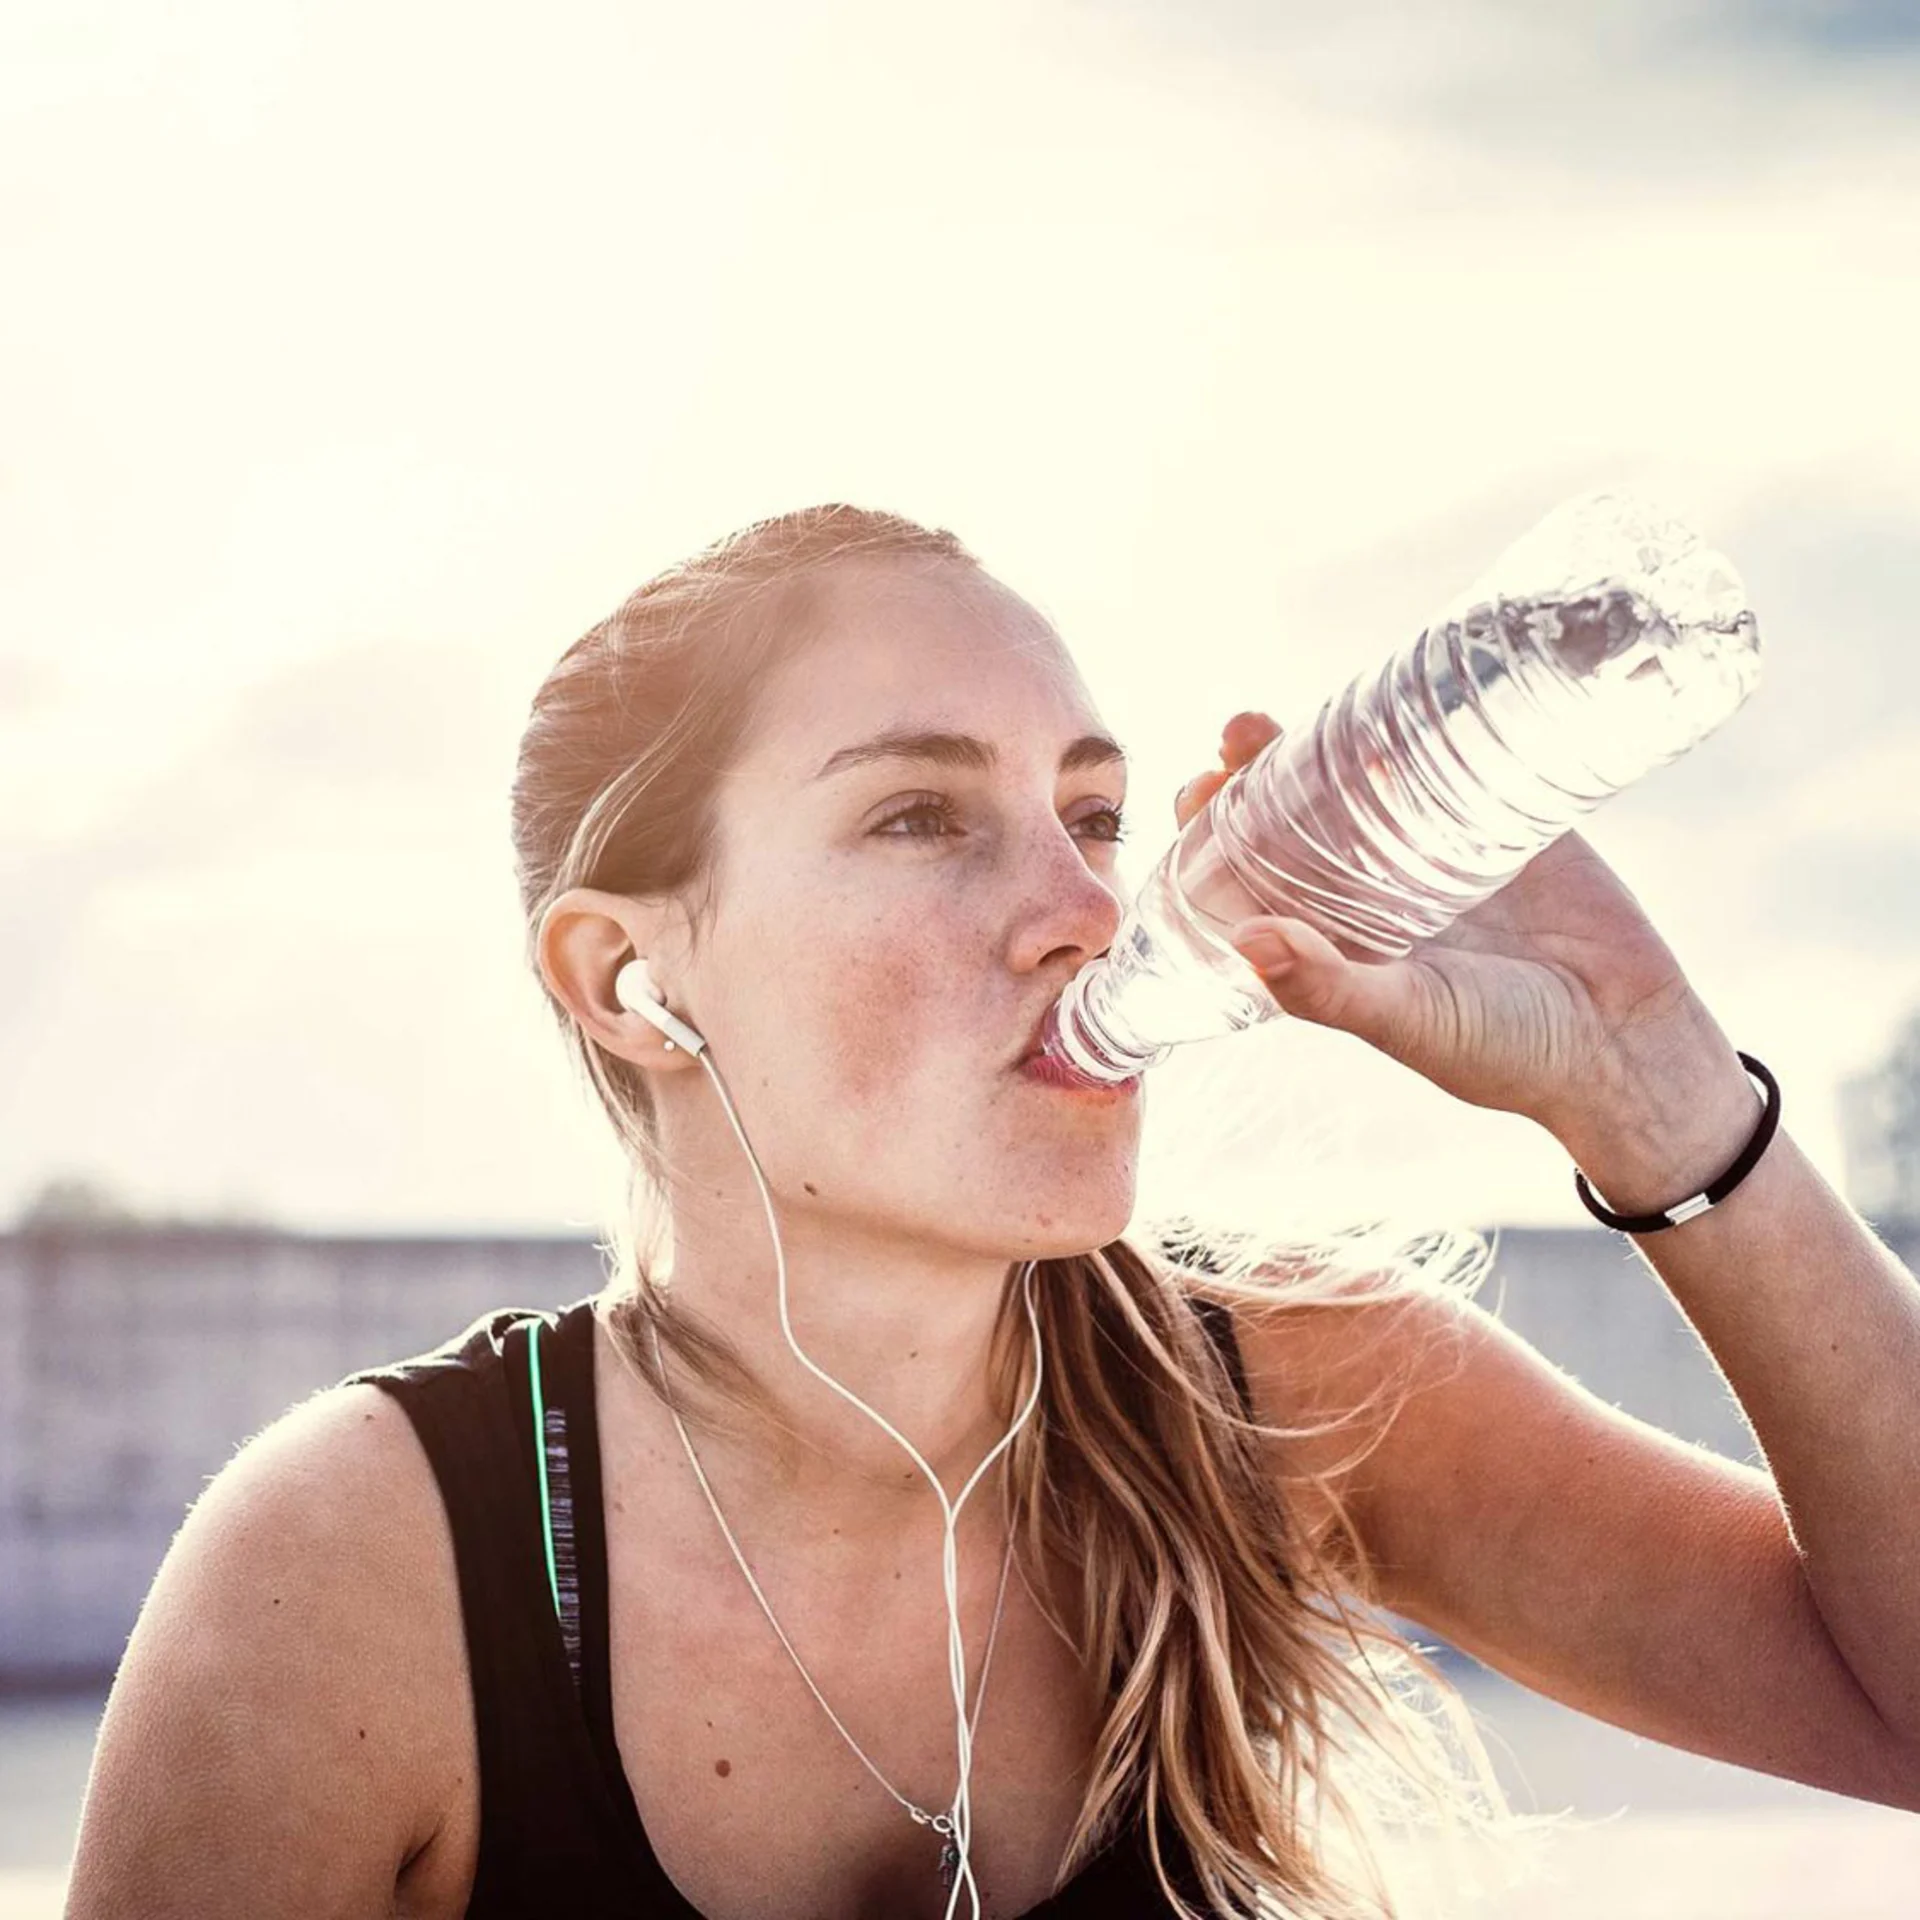 Una giovane donna beve l'acqua da una bottiglia dopo l'esercizio